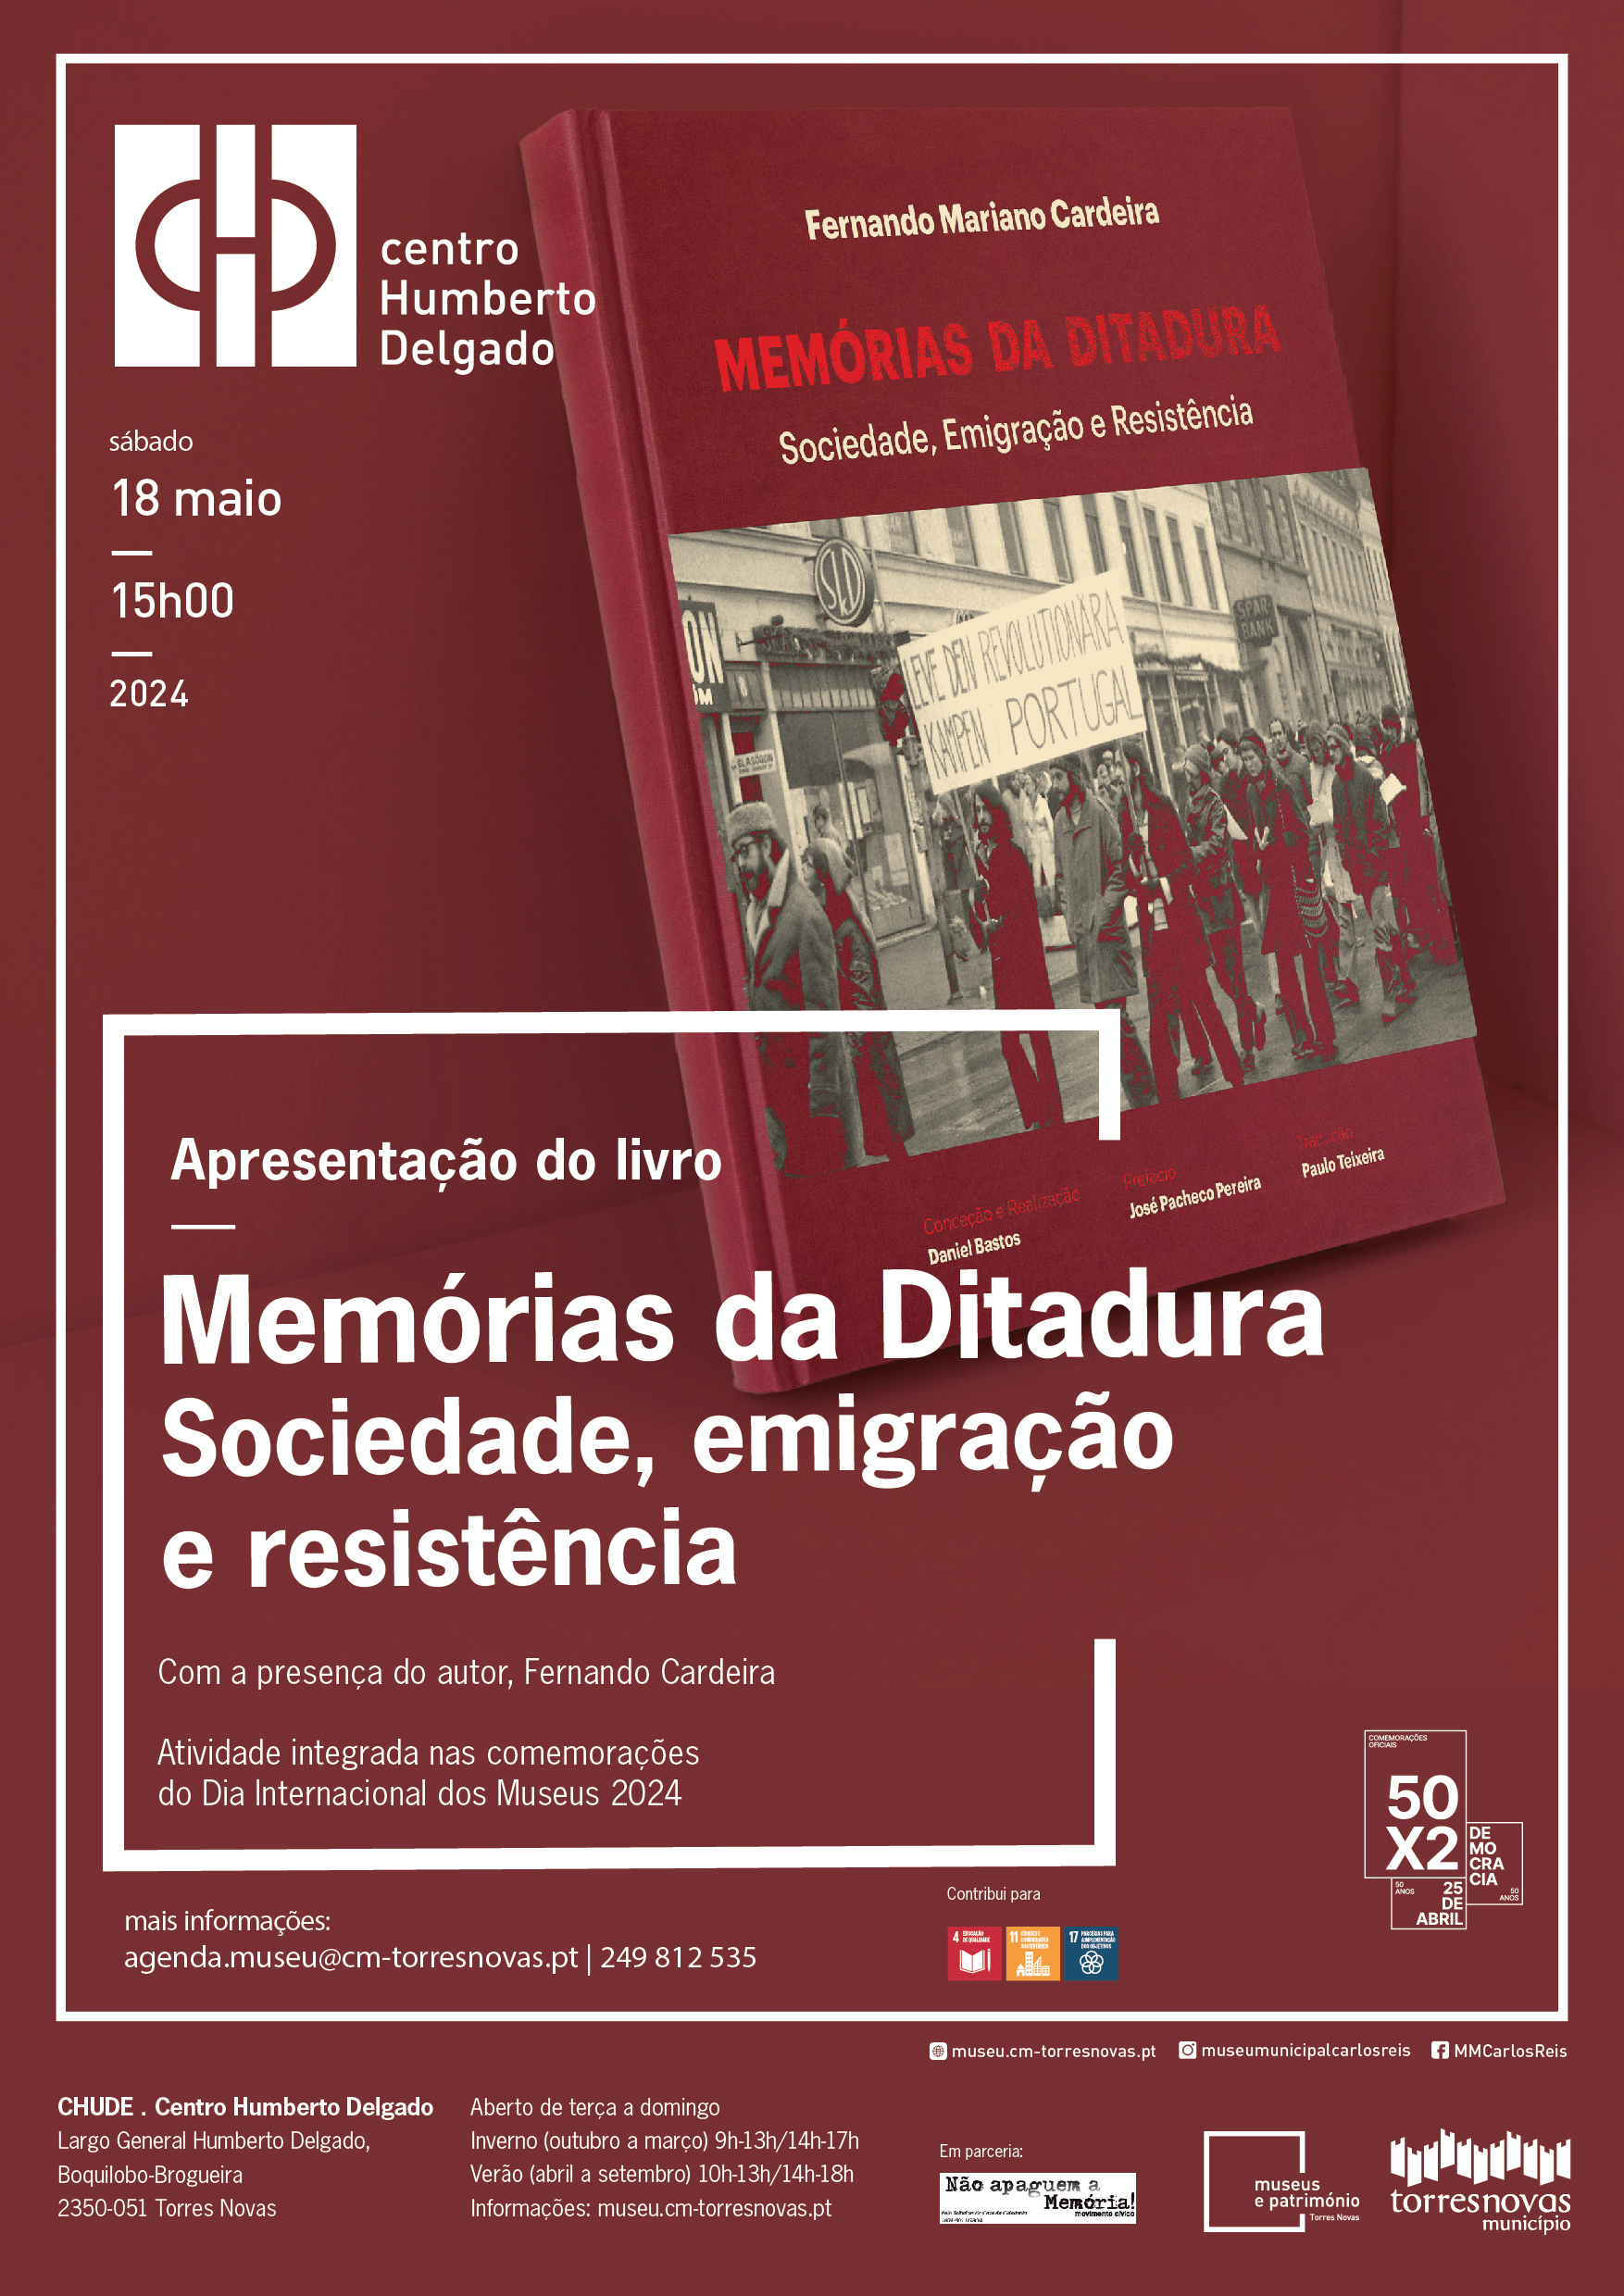 Capa Oficial do Evento Apresentação do livro «Memórias da Ditadura» 